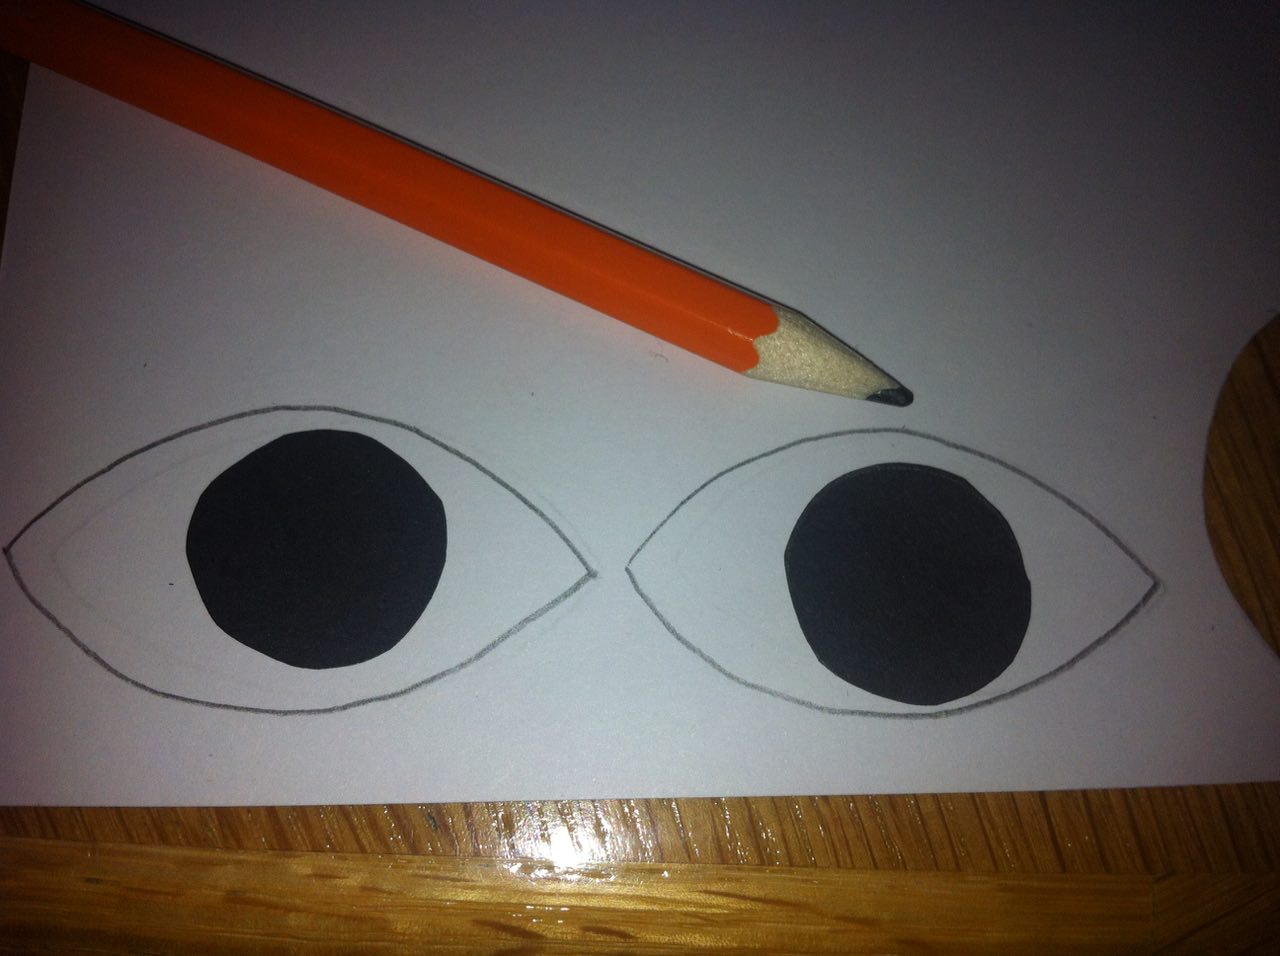 Pose les ronds noirs sur la feuille blanche et dessine les yeux autour.